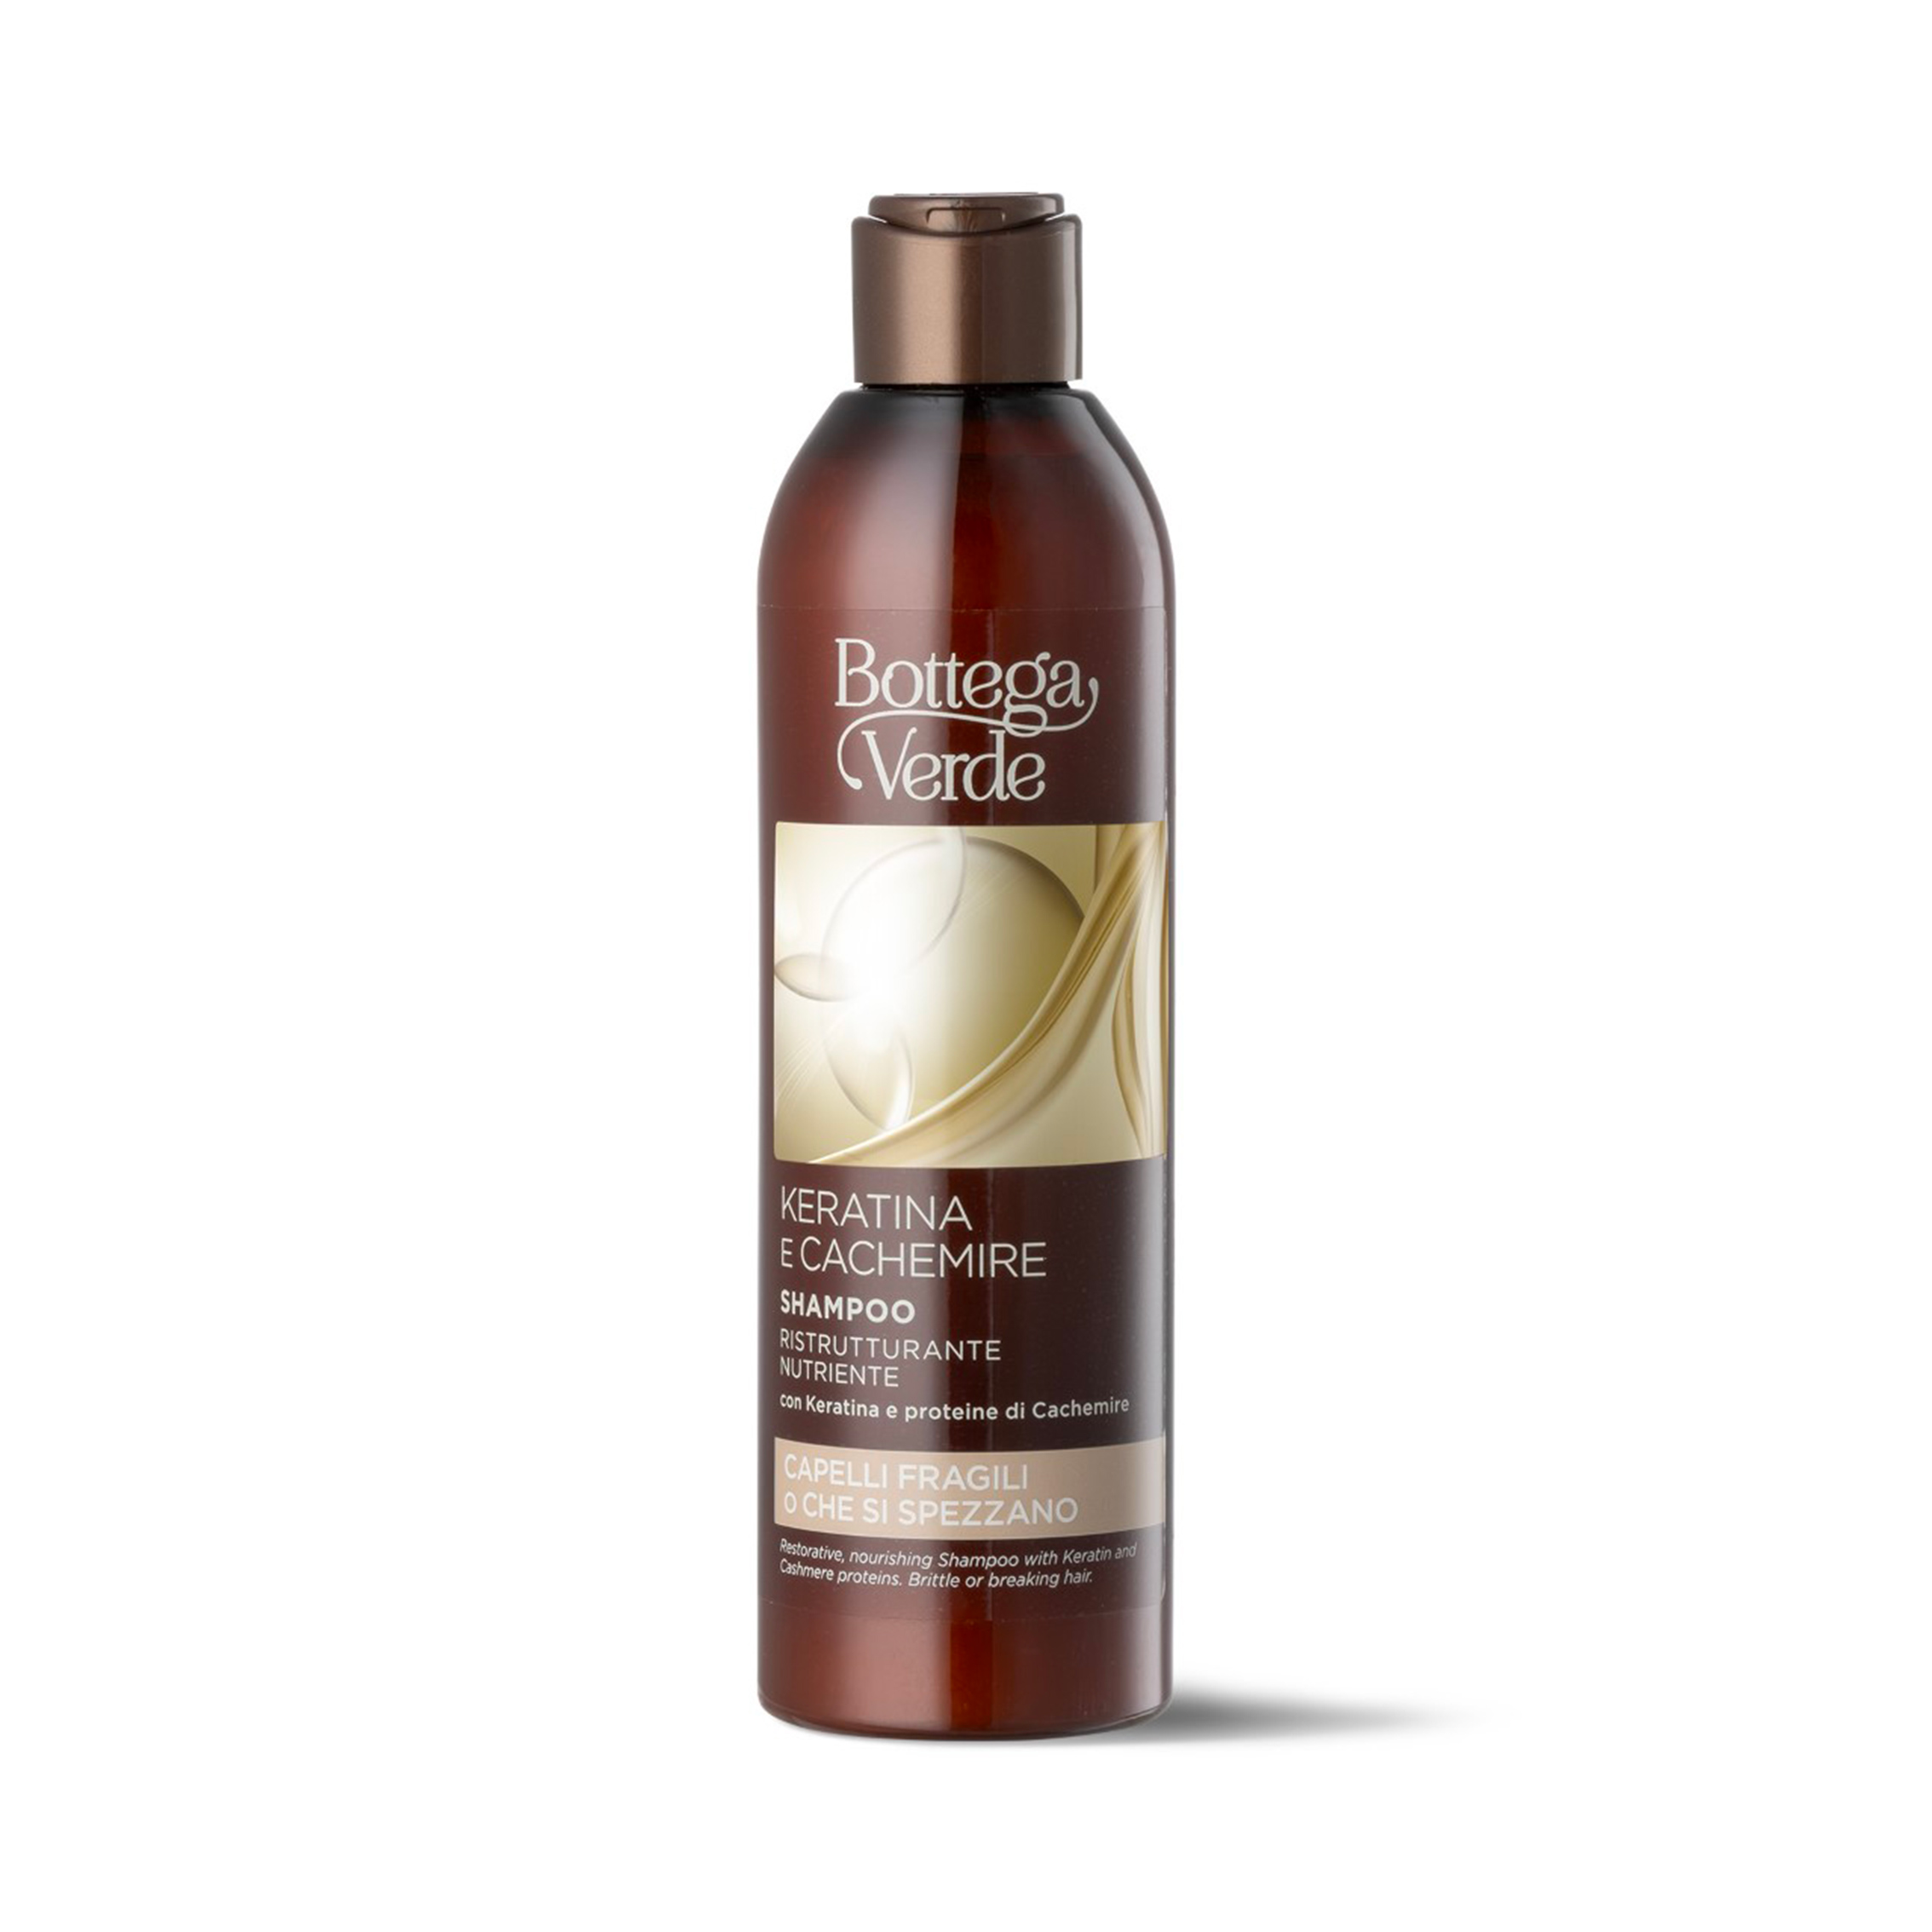 Keratina e Cachemire - Shampoo ristrutturante nutriente - con Keratina e proteine di Cachemire - capelli fragili o che si spezzano